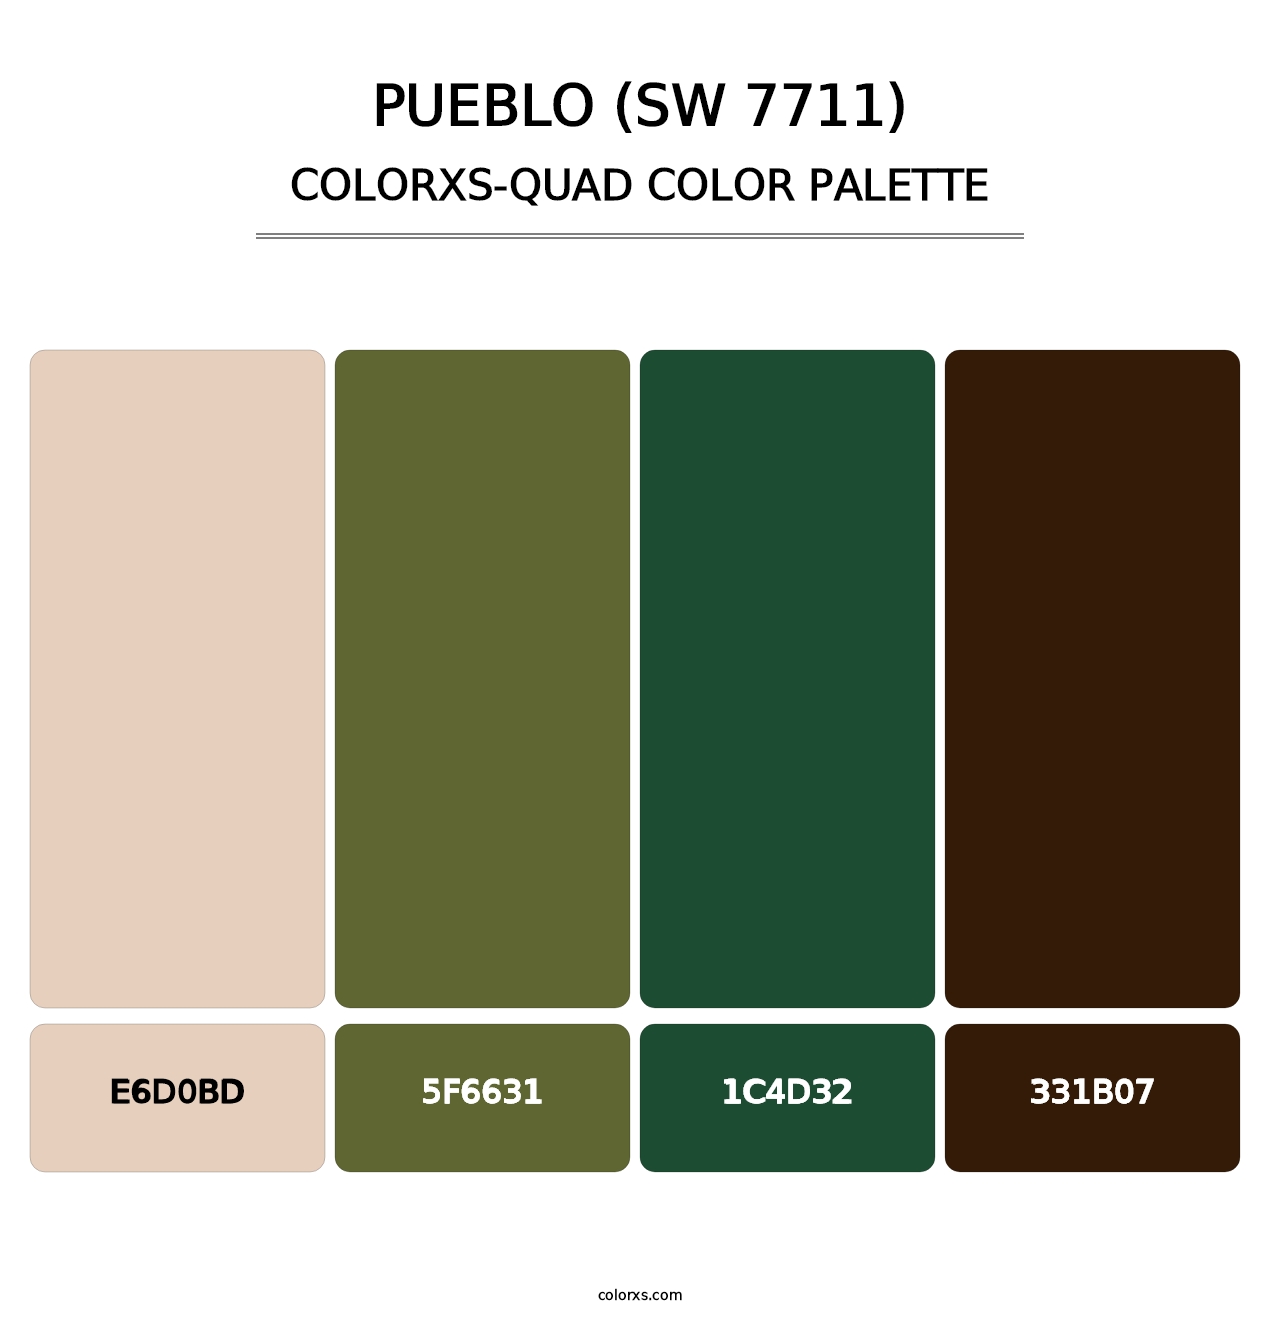 Pueblo (SW 7711) - Colorxs Quad Palette